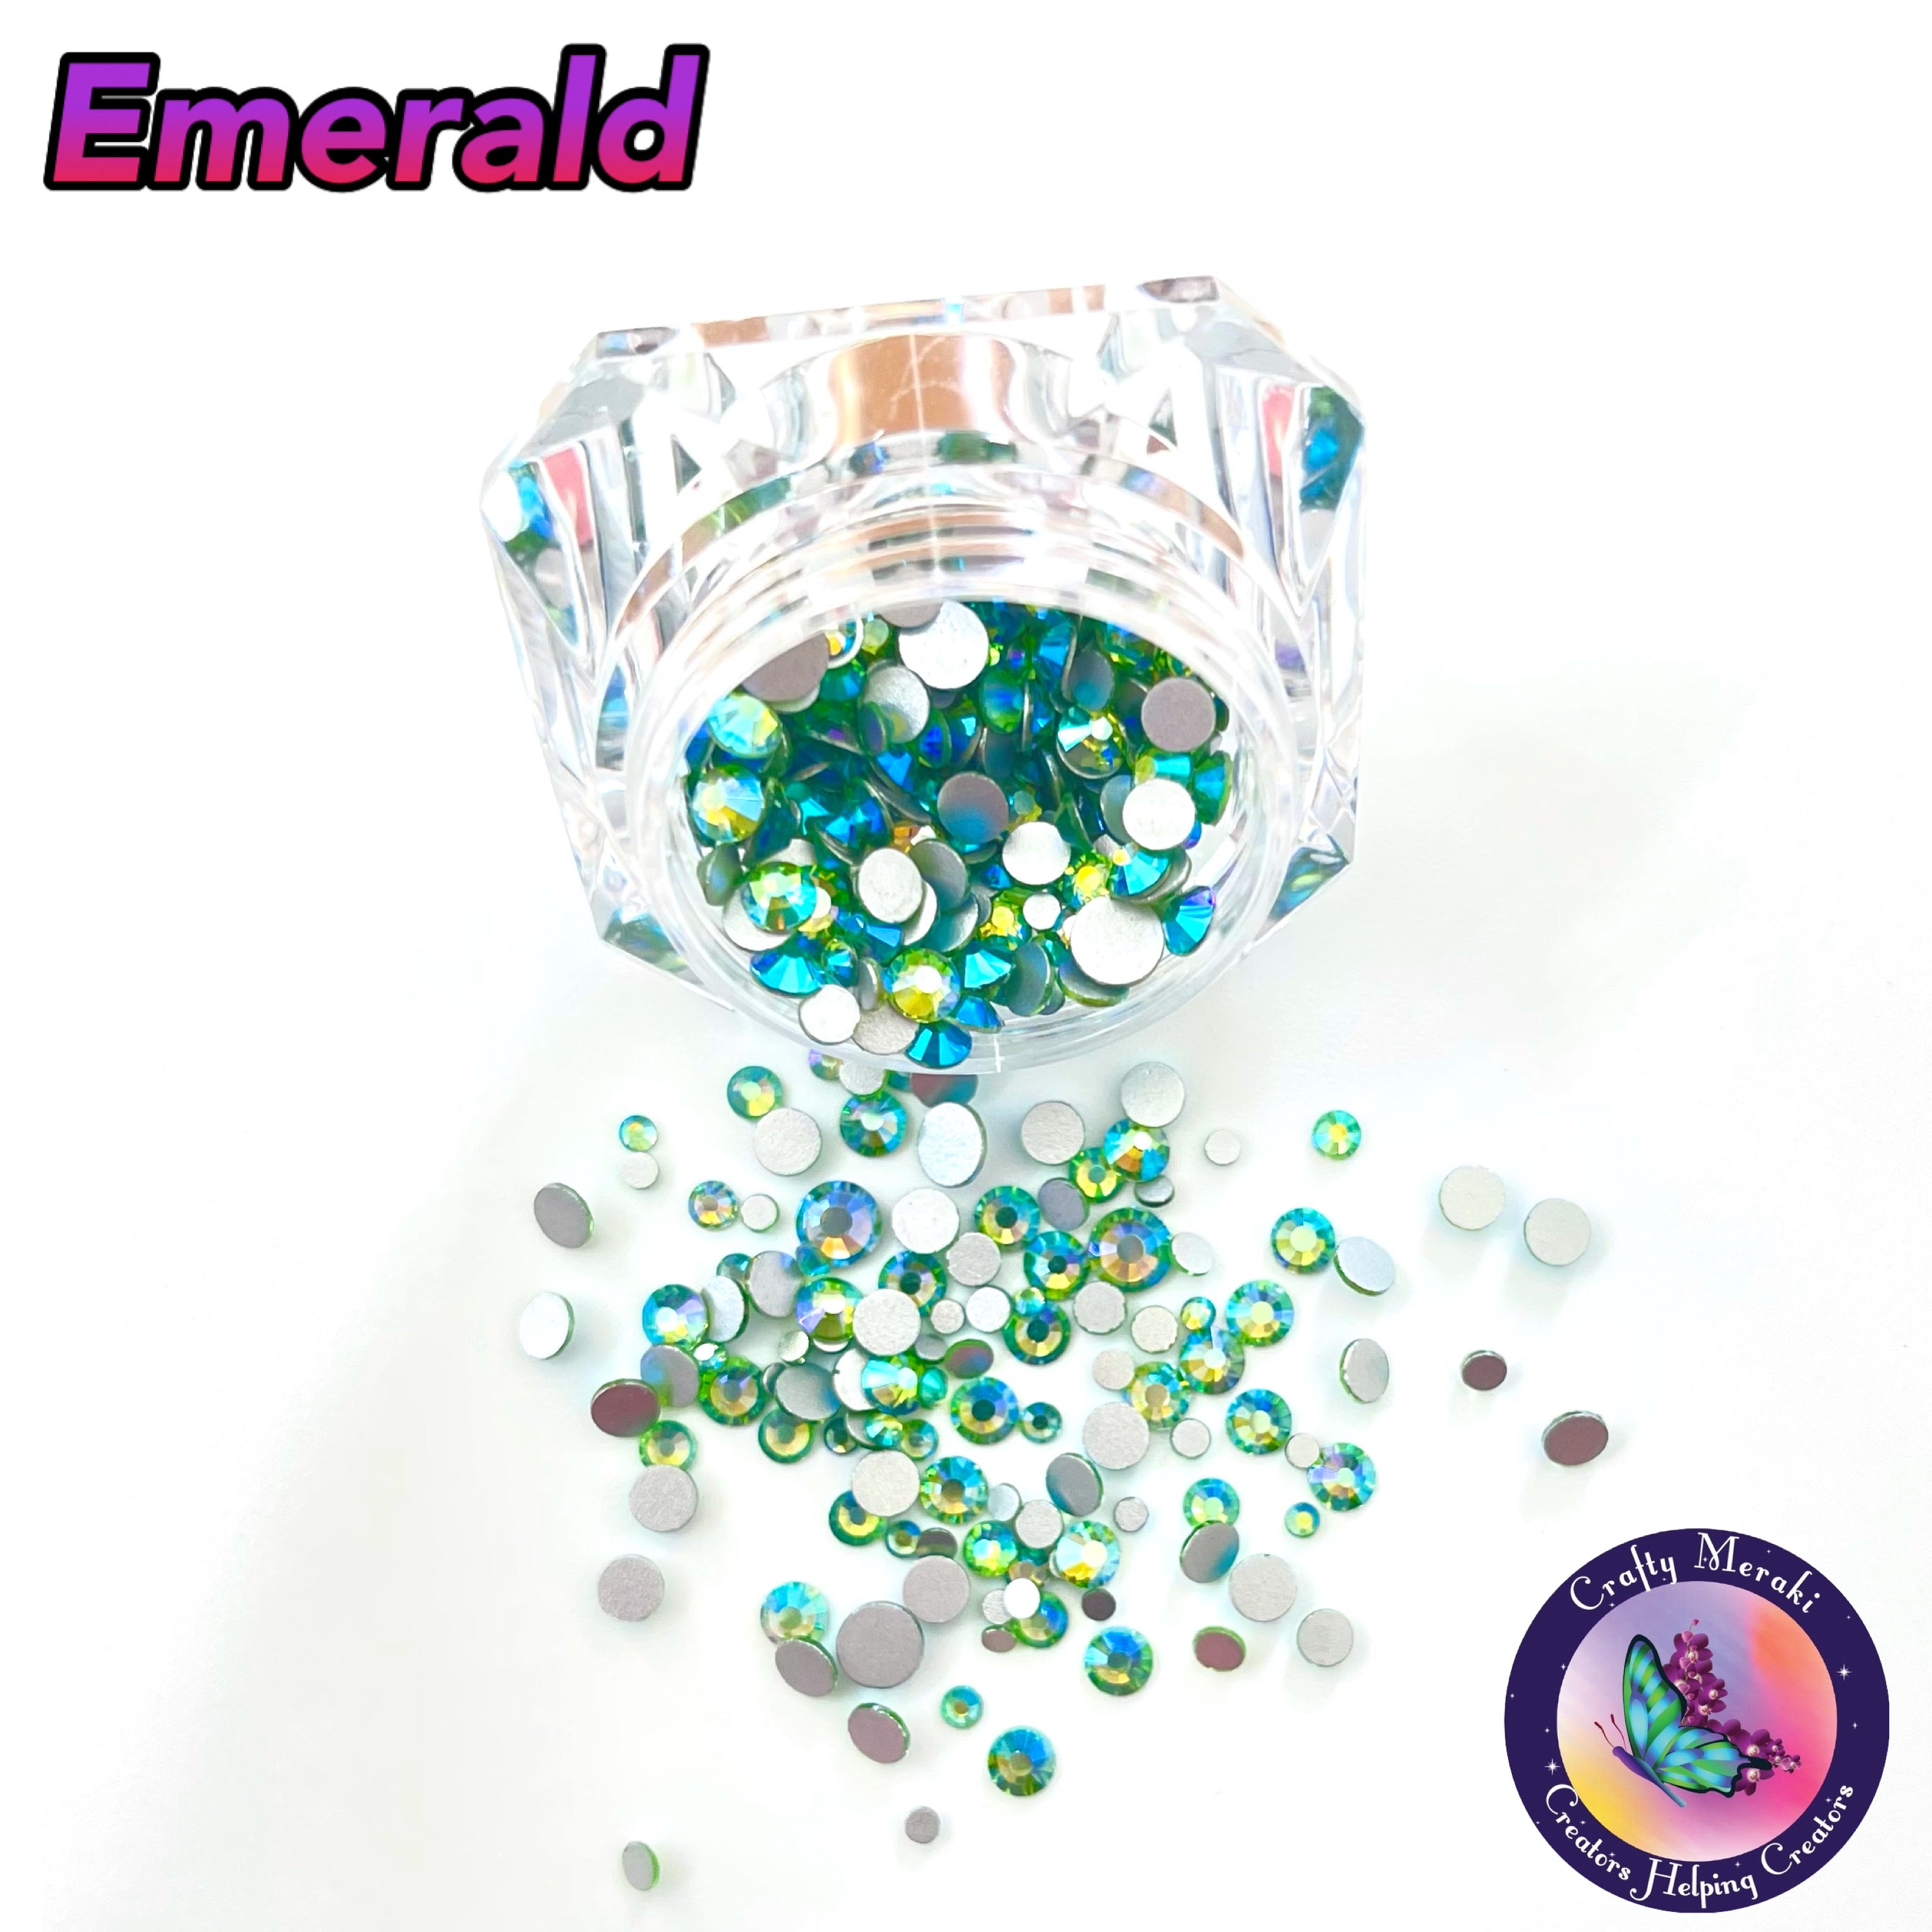 Meraki Sparkle Emerald - Crafty Meraki